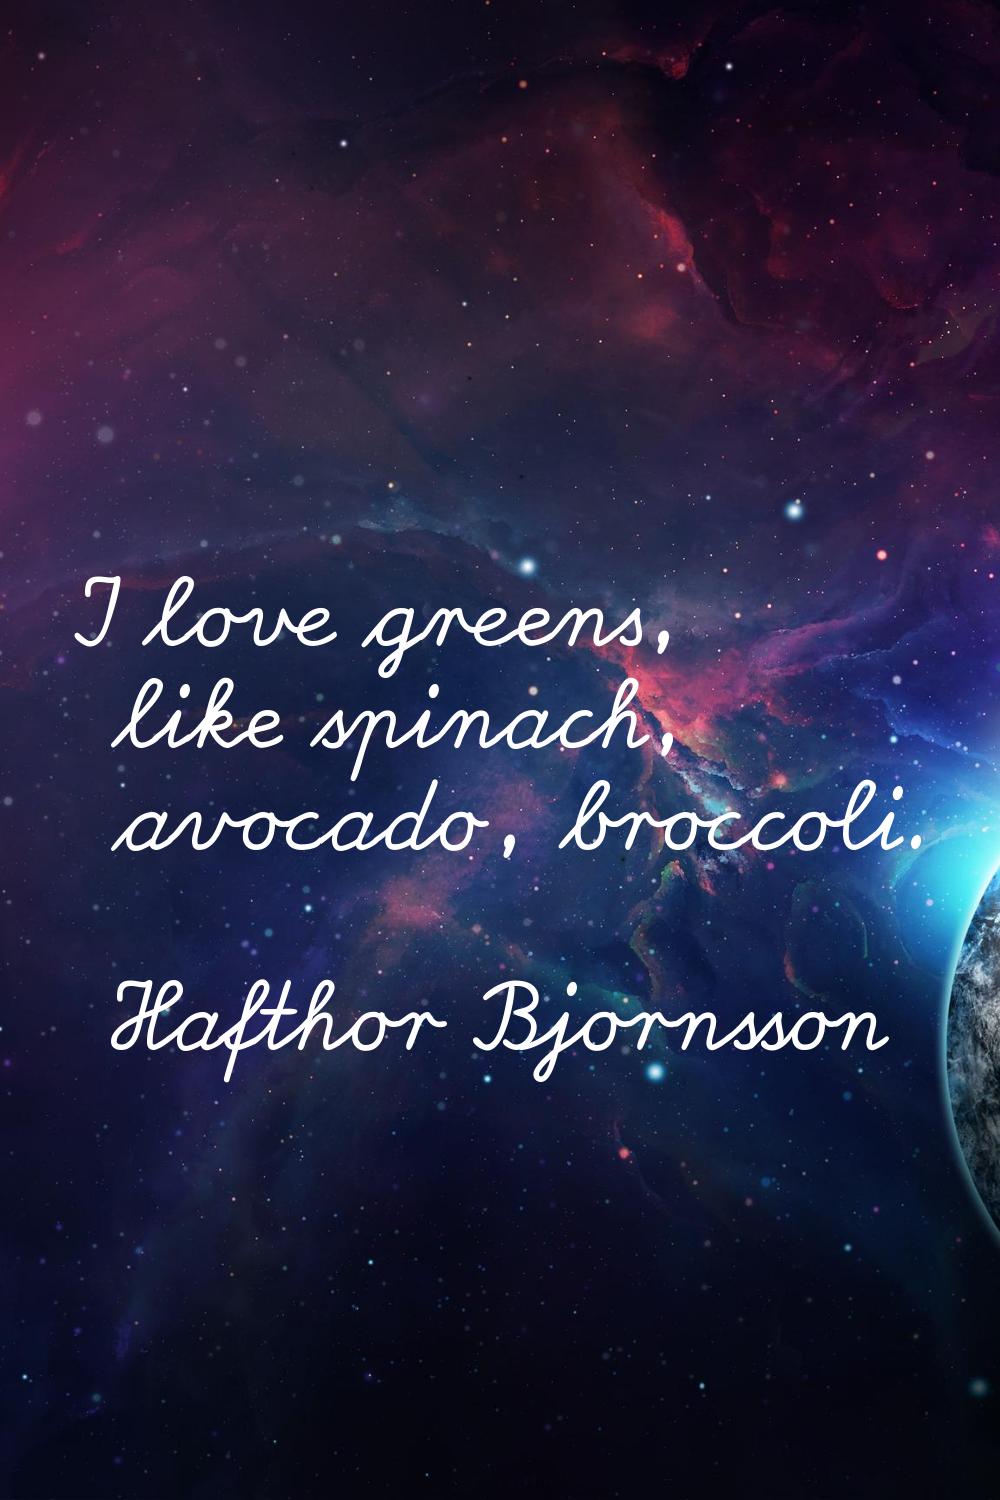 I love greens, like spinach, avocado, broccoli.